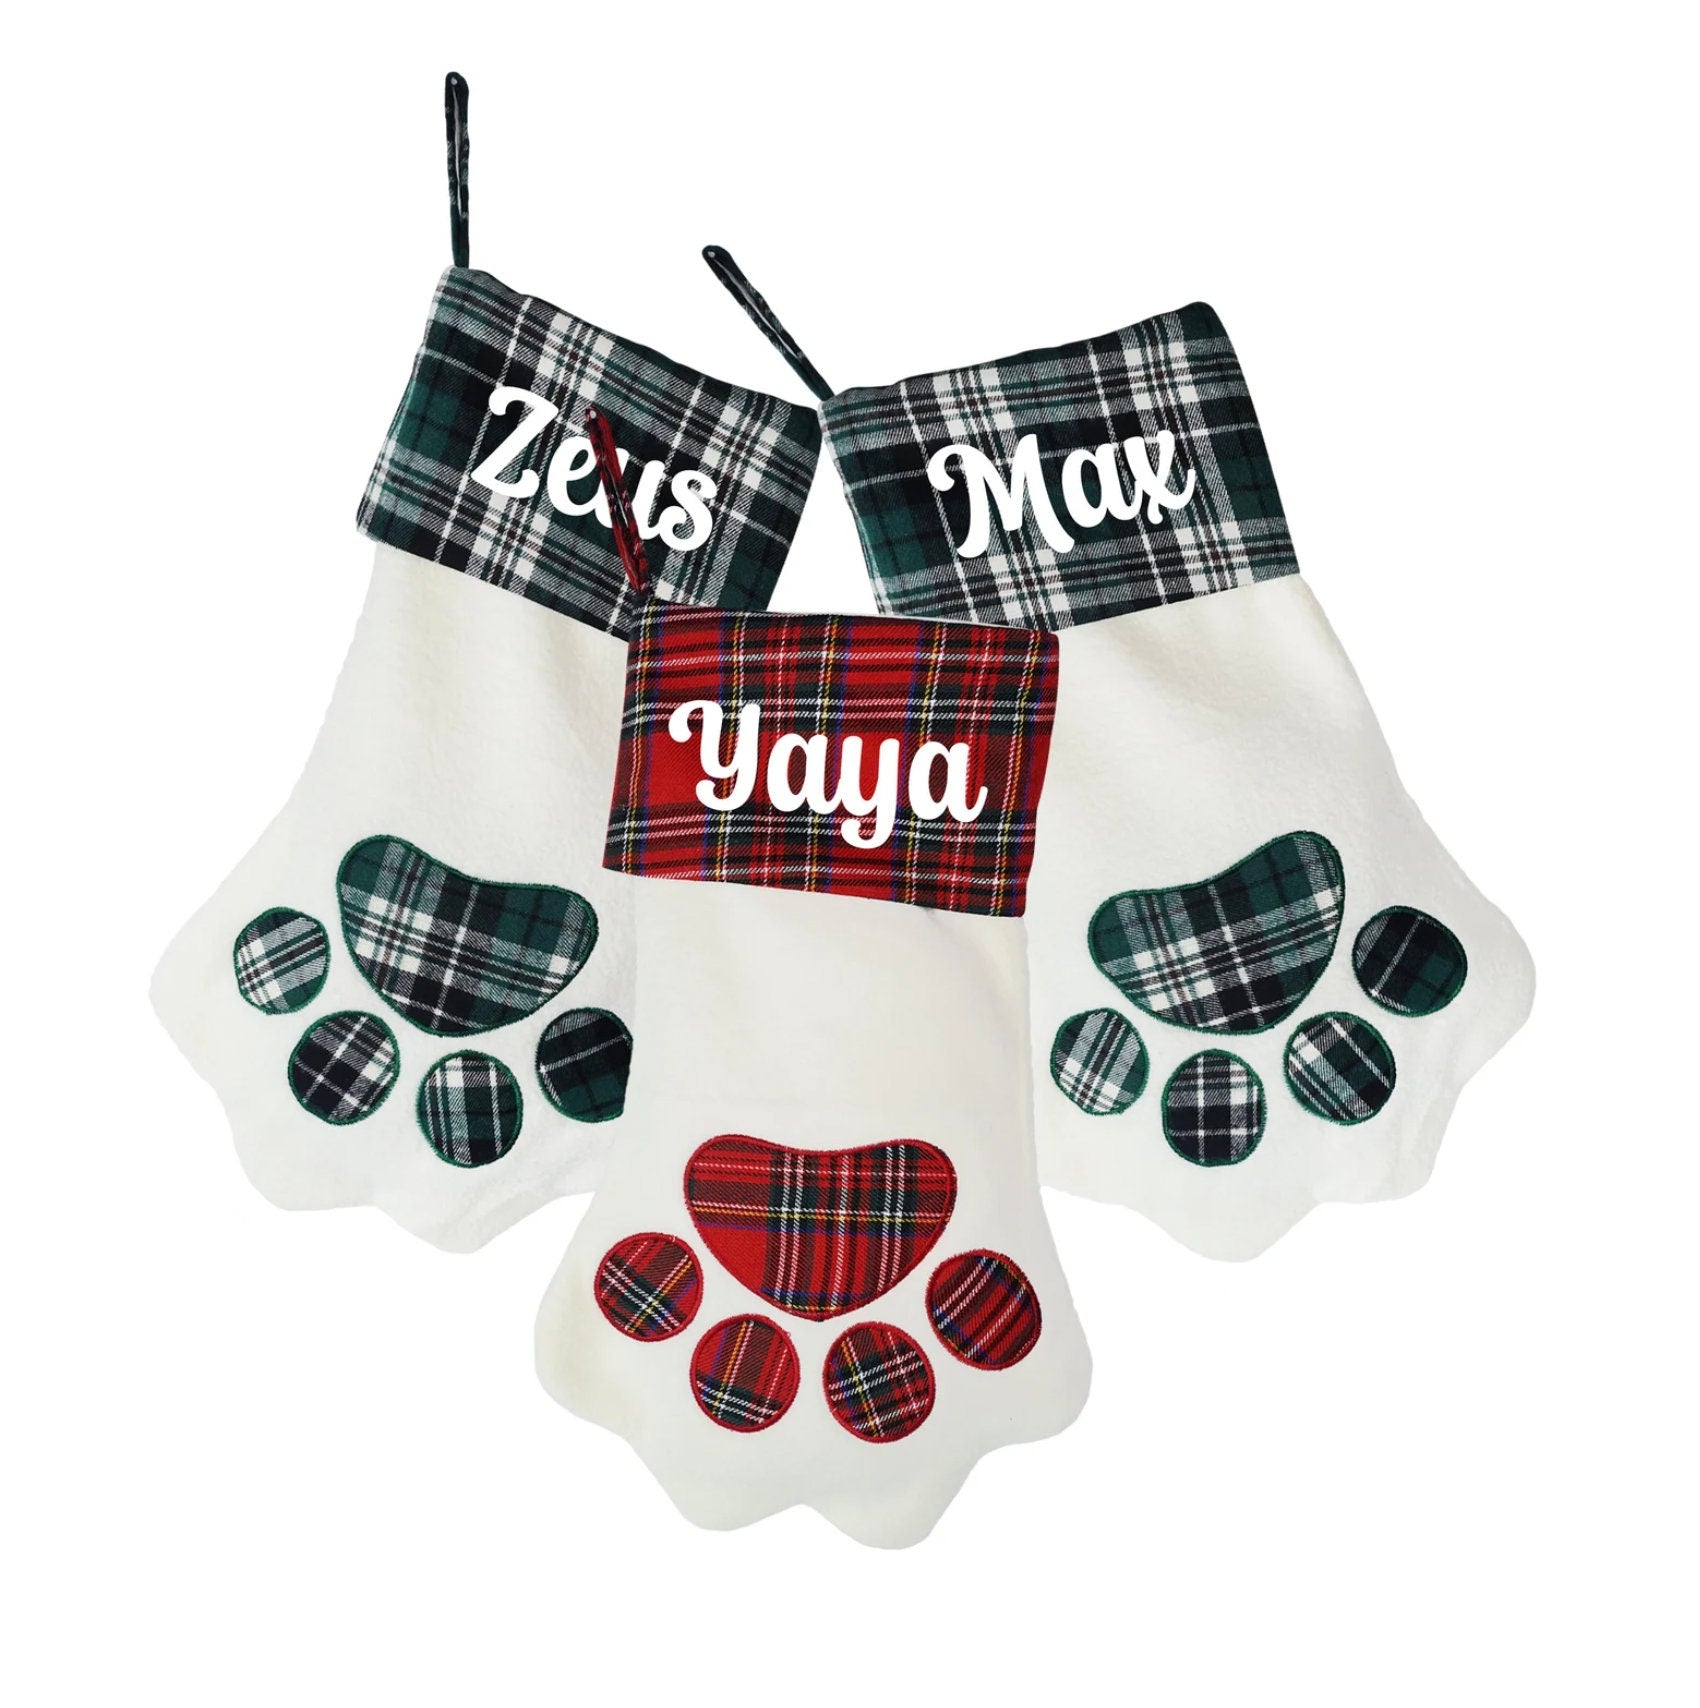 Personalized Christmas Dog Stockings, Custom Pet Stocking, Christmas Stockings for Dogs and Cats, Dog Stocking